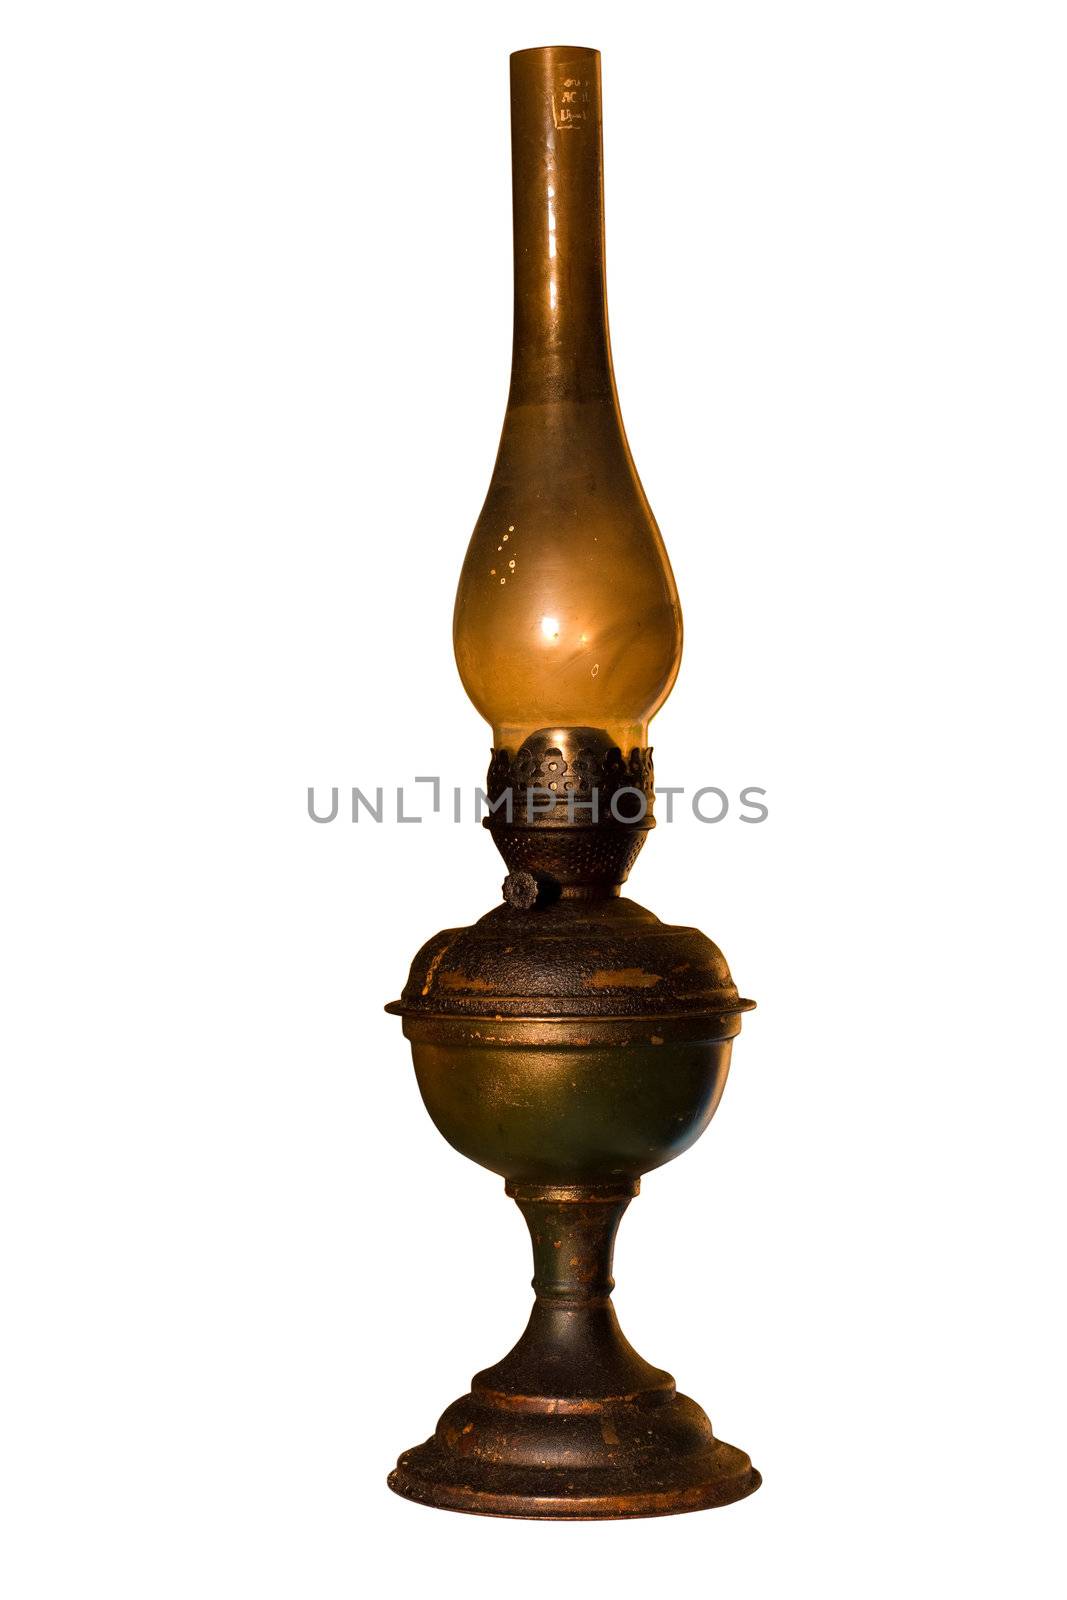 Old kerosene lamp by snaka